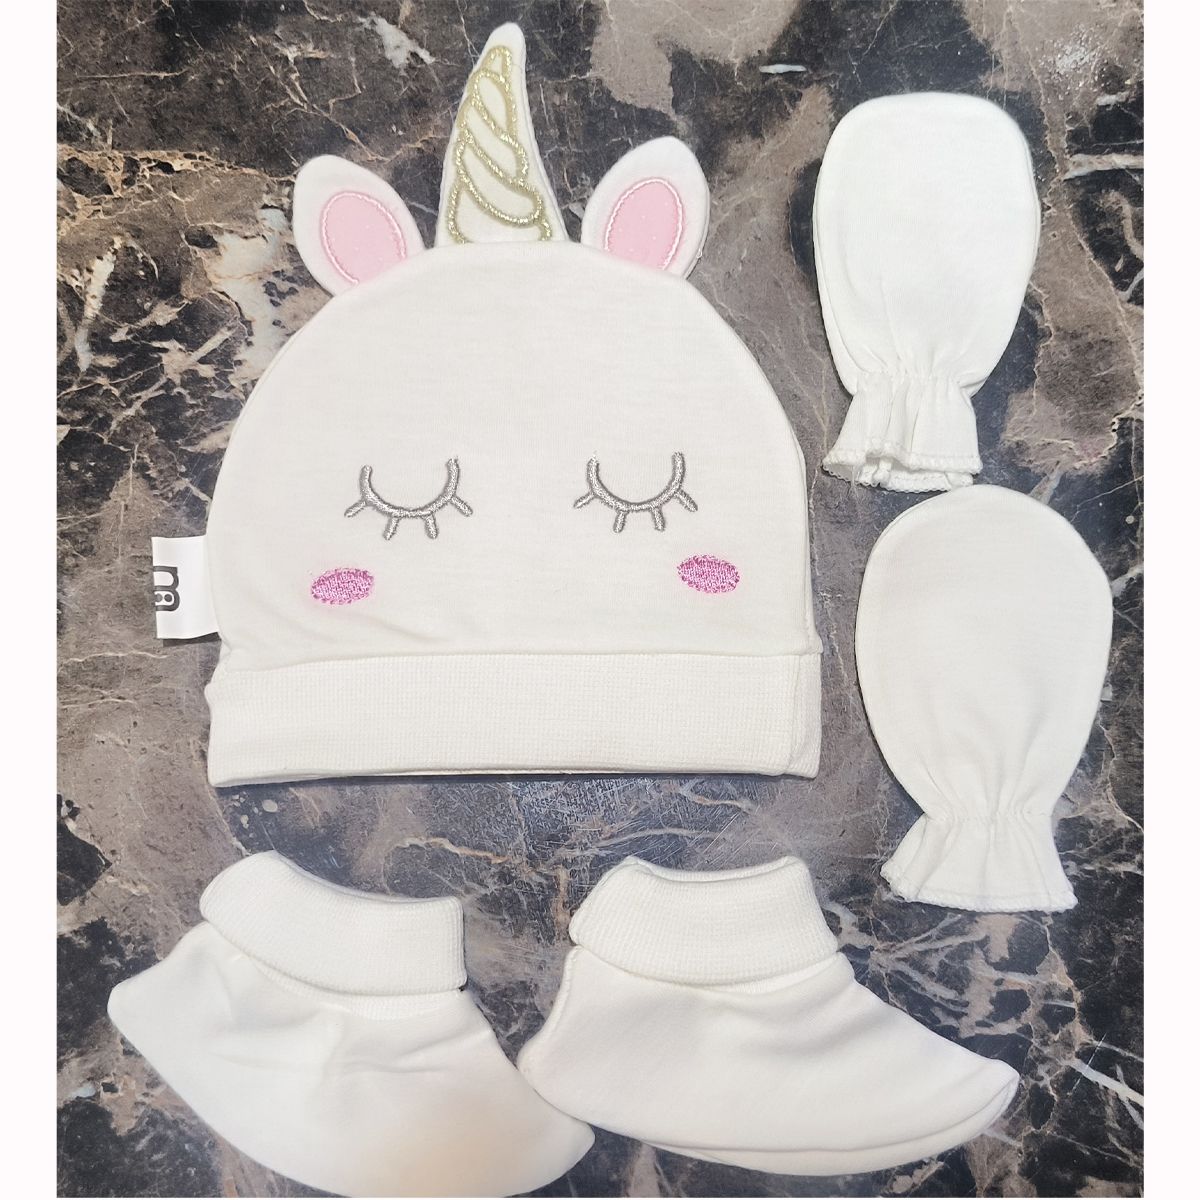 ست کلاه و دستکش و پاپوش نوزادی مادرکر مدل unicorn -  - 3